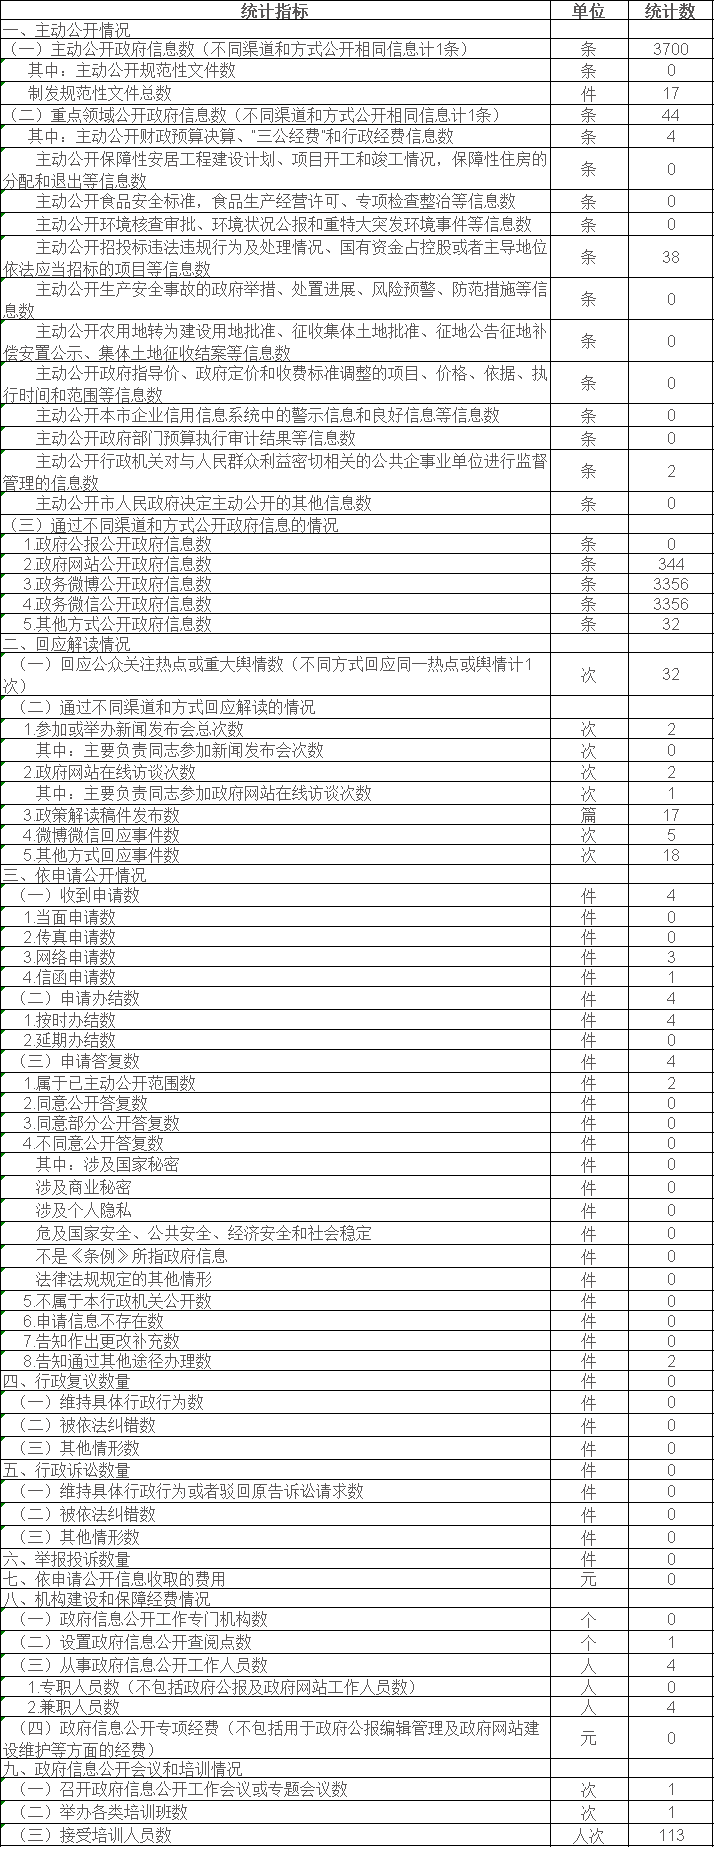  北京市氣象部門政府信息公開情況統計表